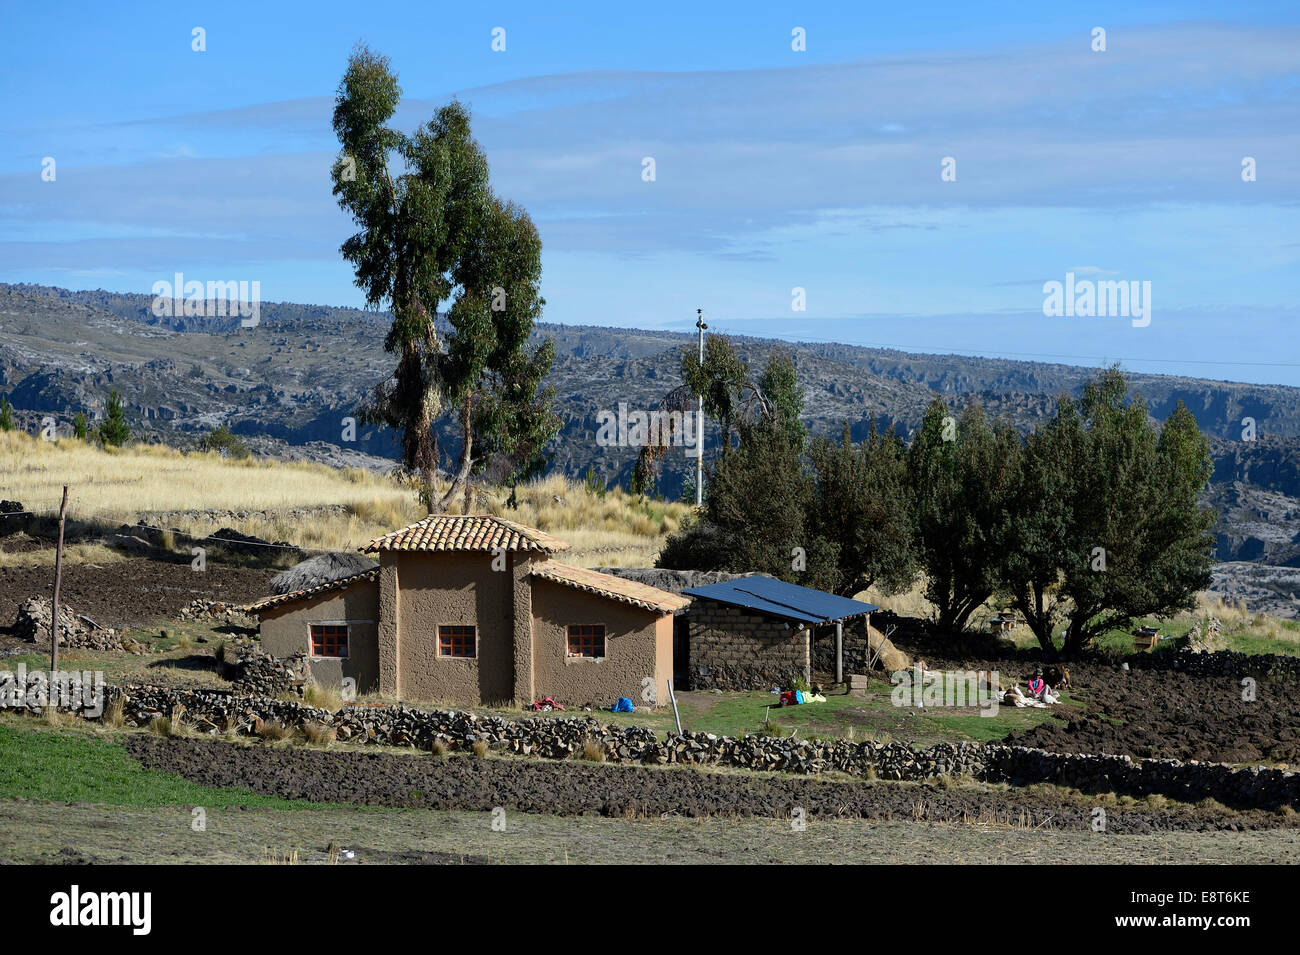 Casa Tradizionale da adobe mattoni di fango, Quispillacta, Ayacucho, Perù Foto Stock